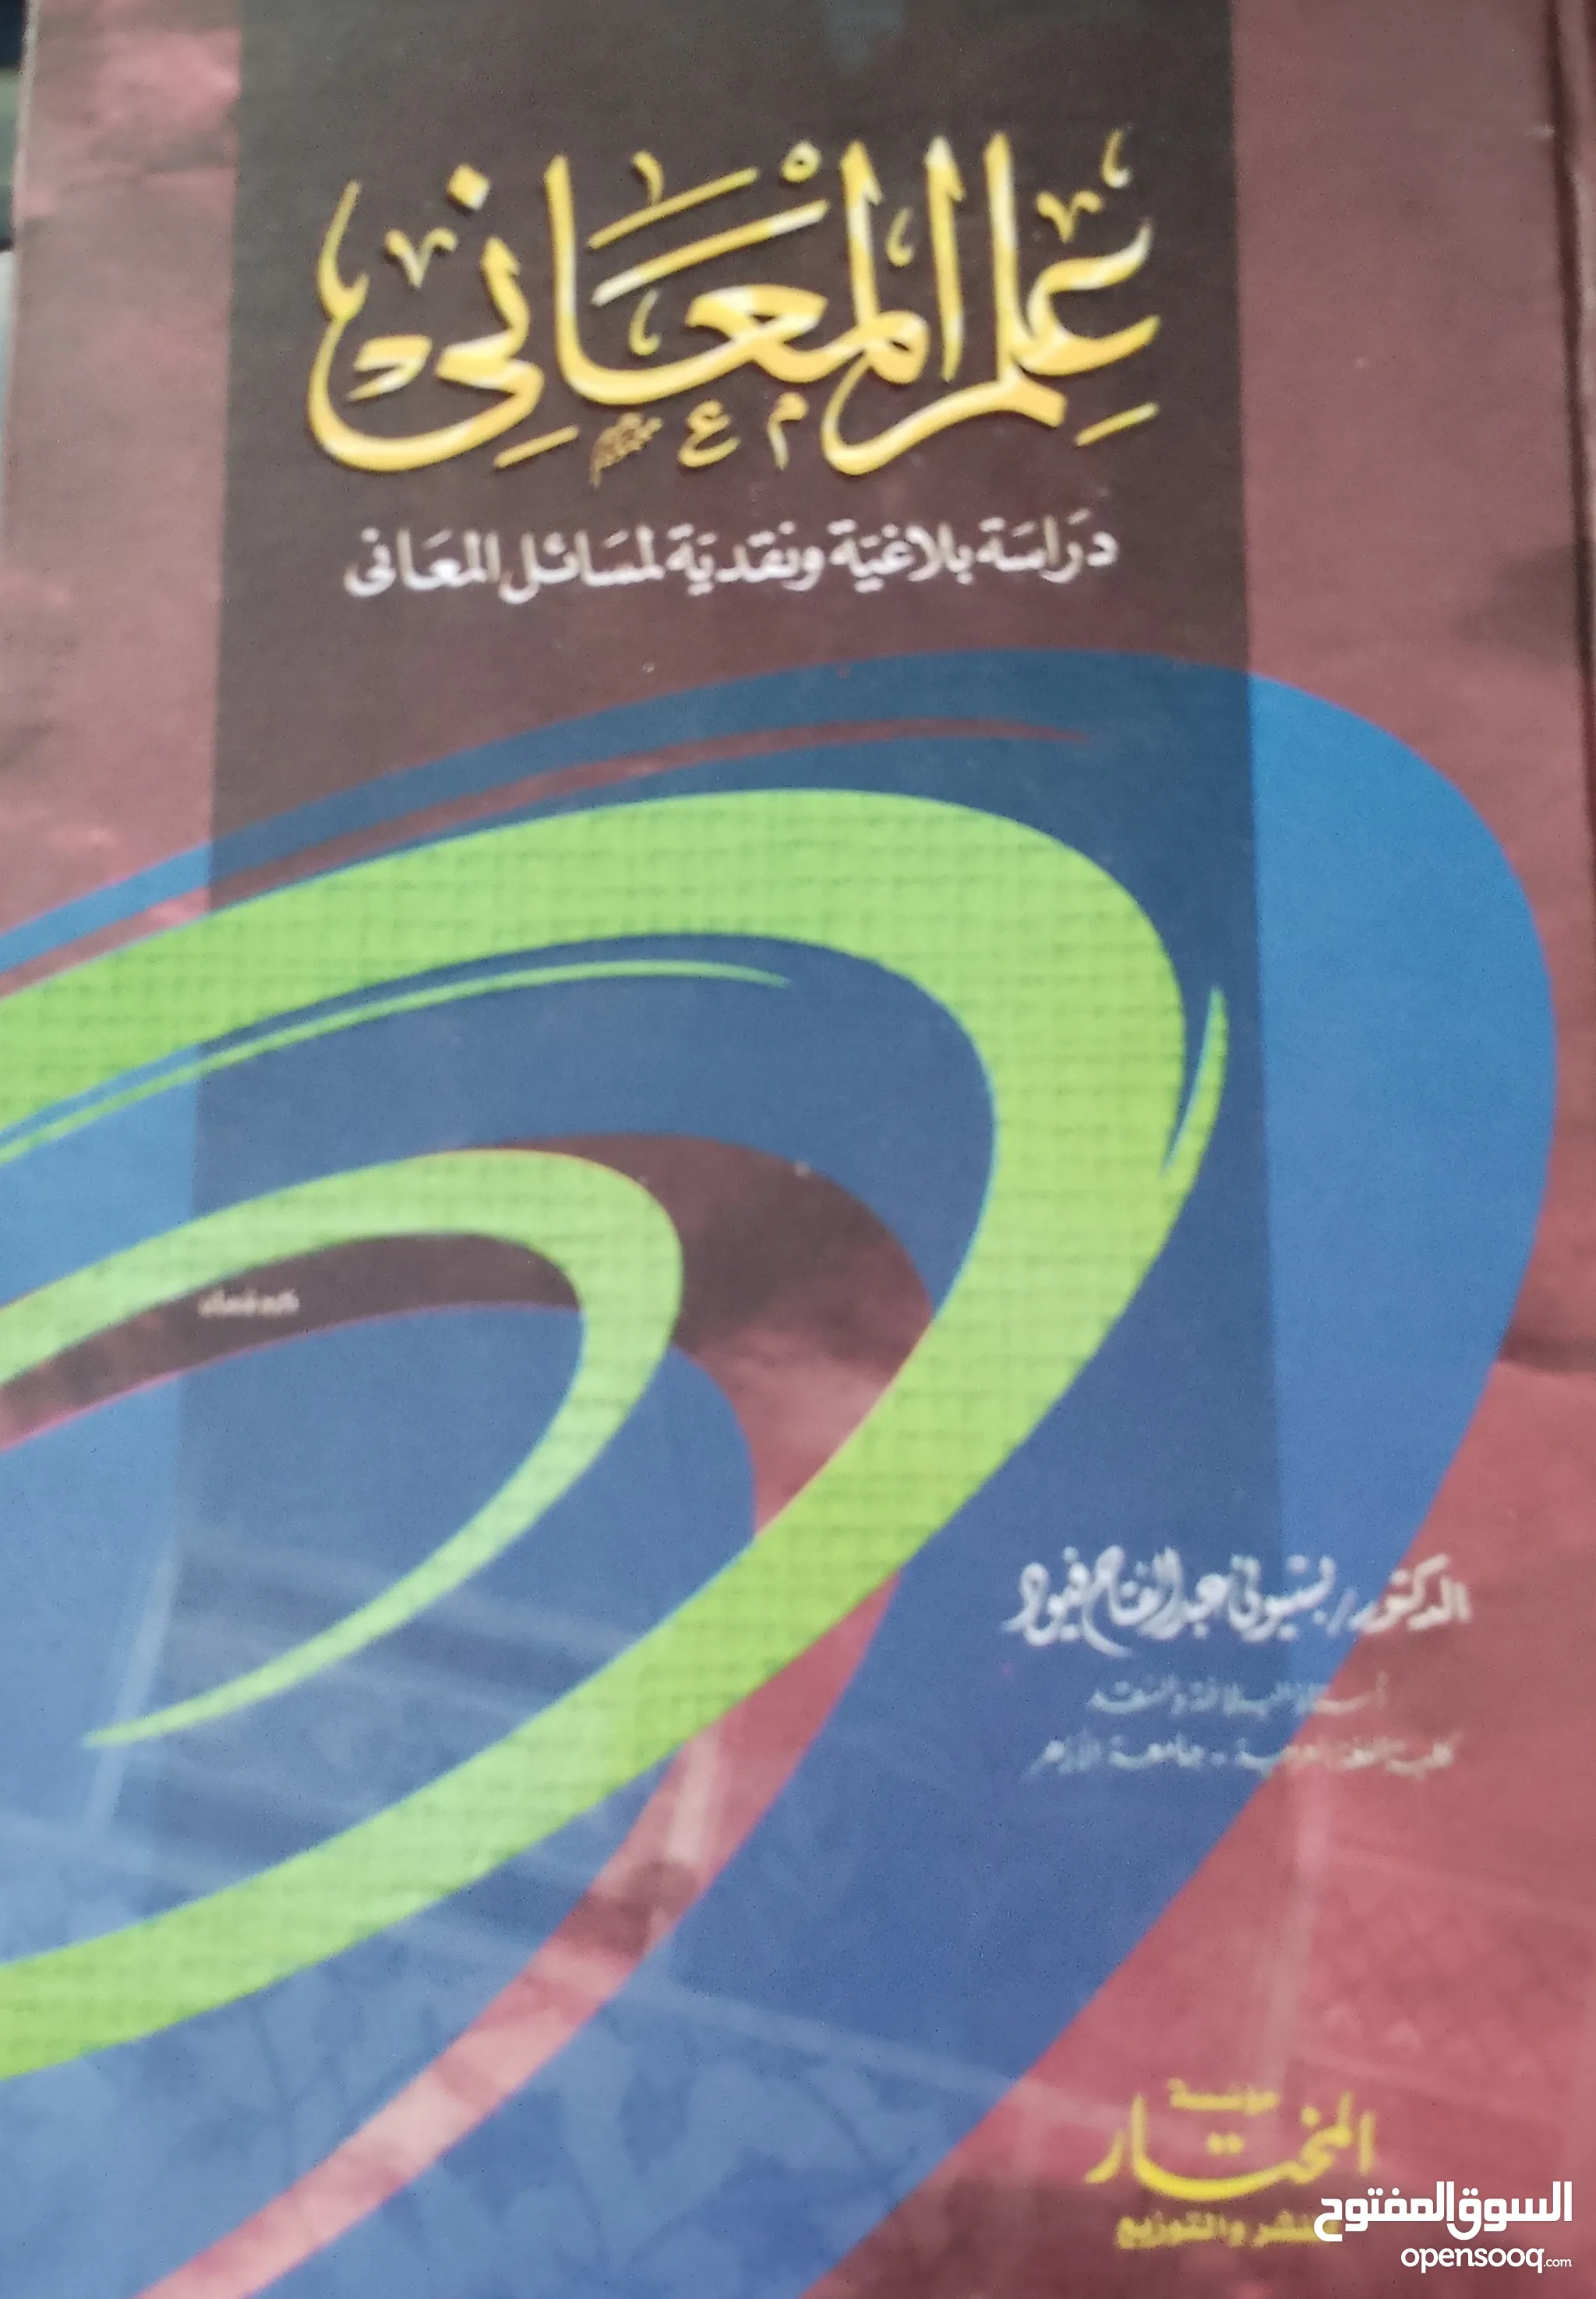 كتب للبيع : كتب تعليمية : مجلات : ارخص الاسعار في مكة | السوق المفتوح